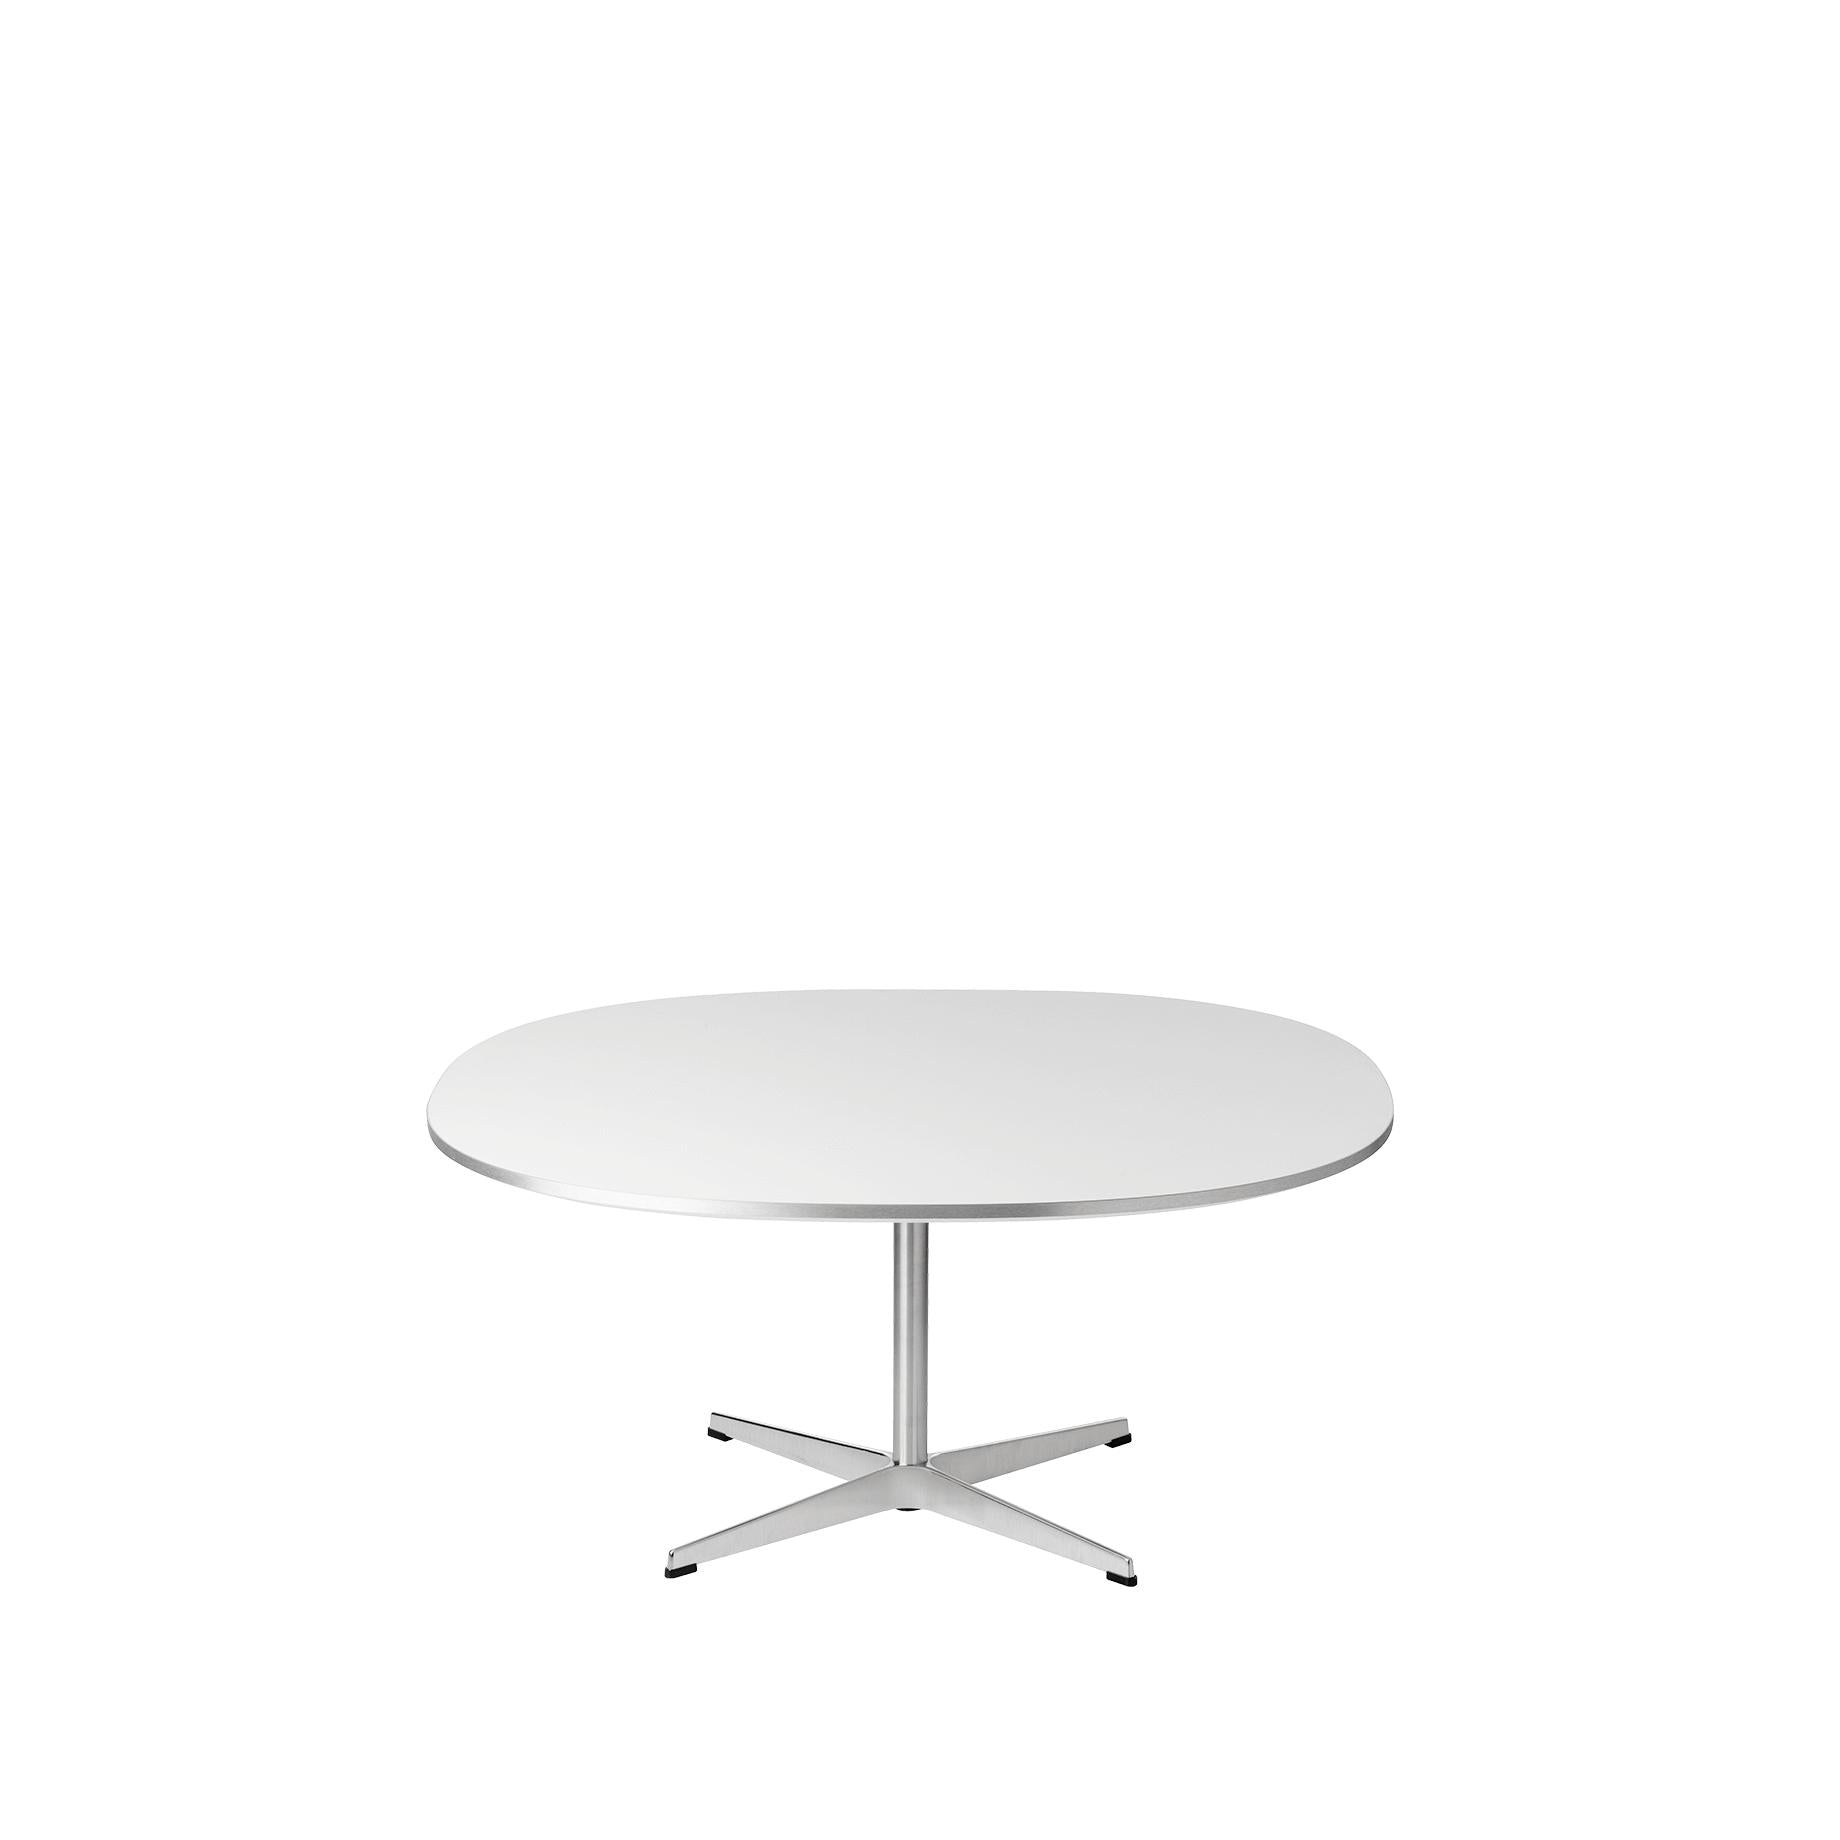 弗里茨·汉森超级圆形咖啡桌Ø100厘米，白色层压板